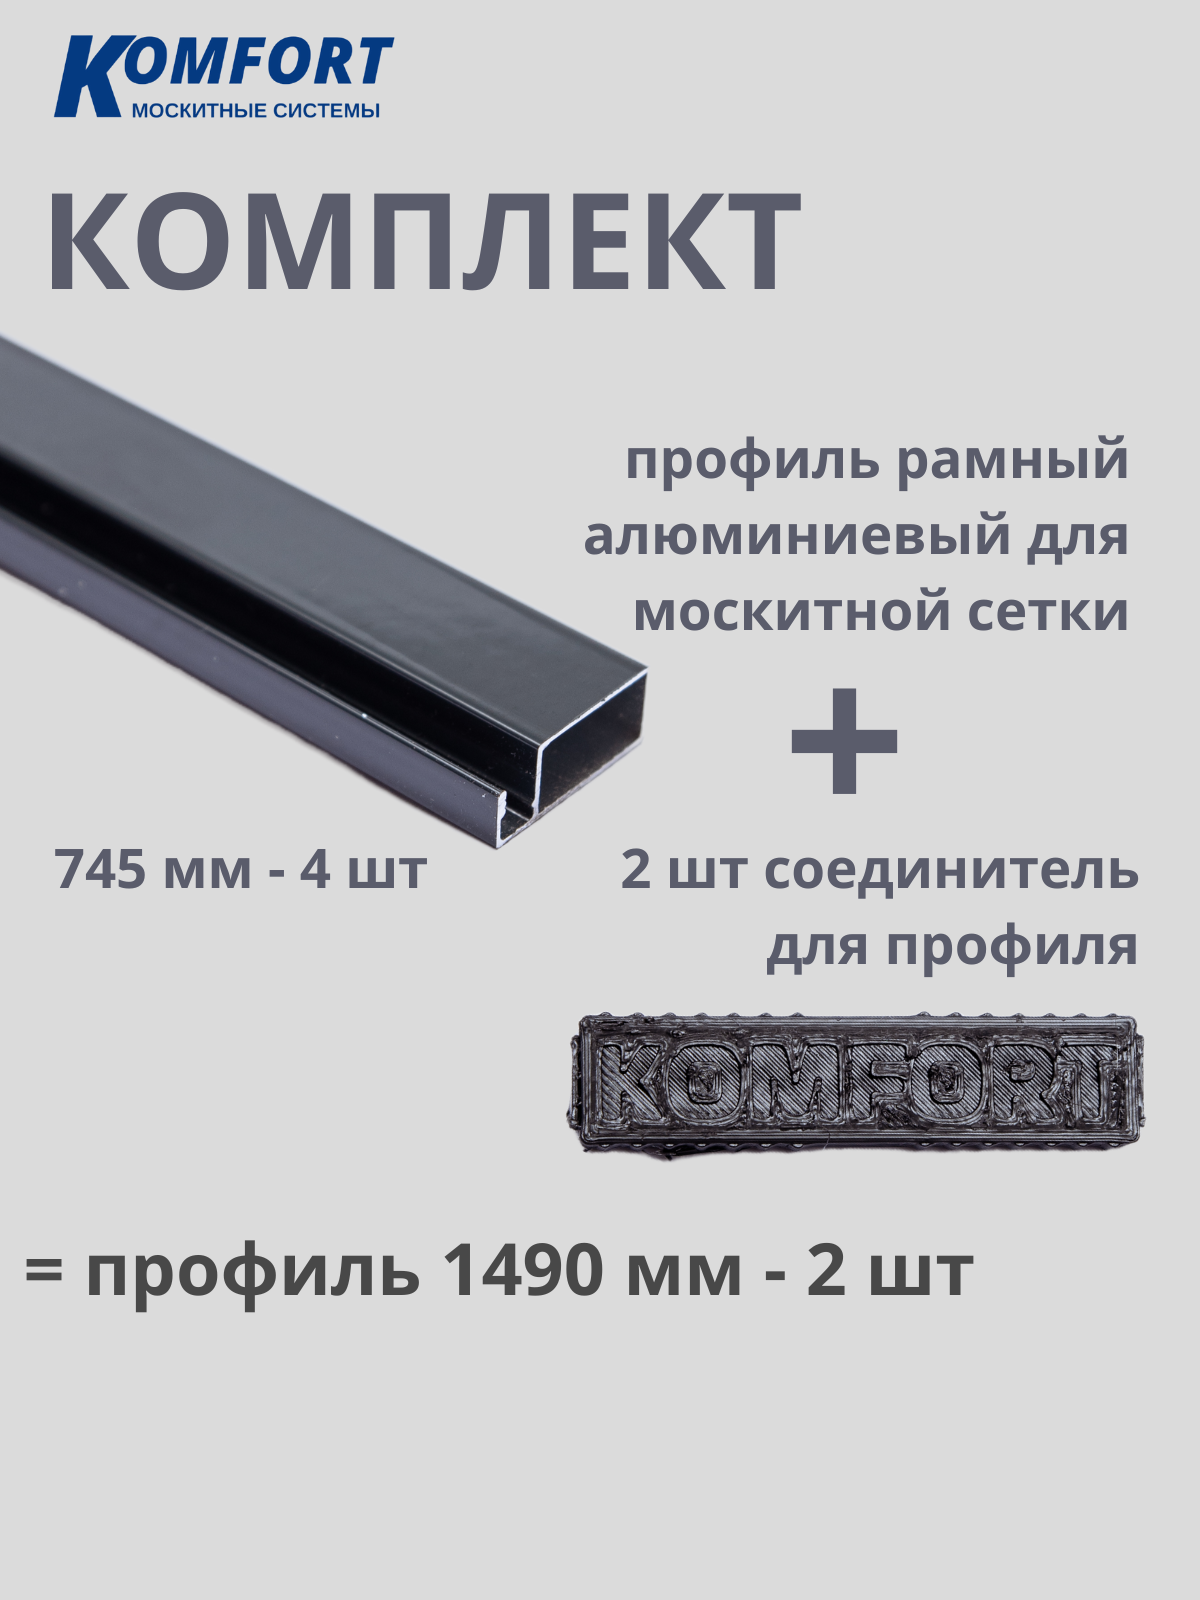 Комплект профиль рамный алюминиевый для москитной сетки с соединителем серый 1490 мм 4 шт